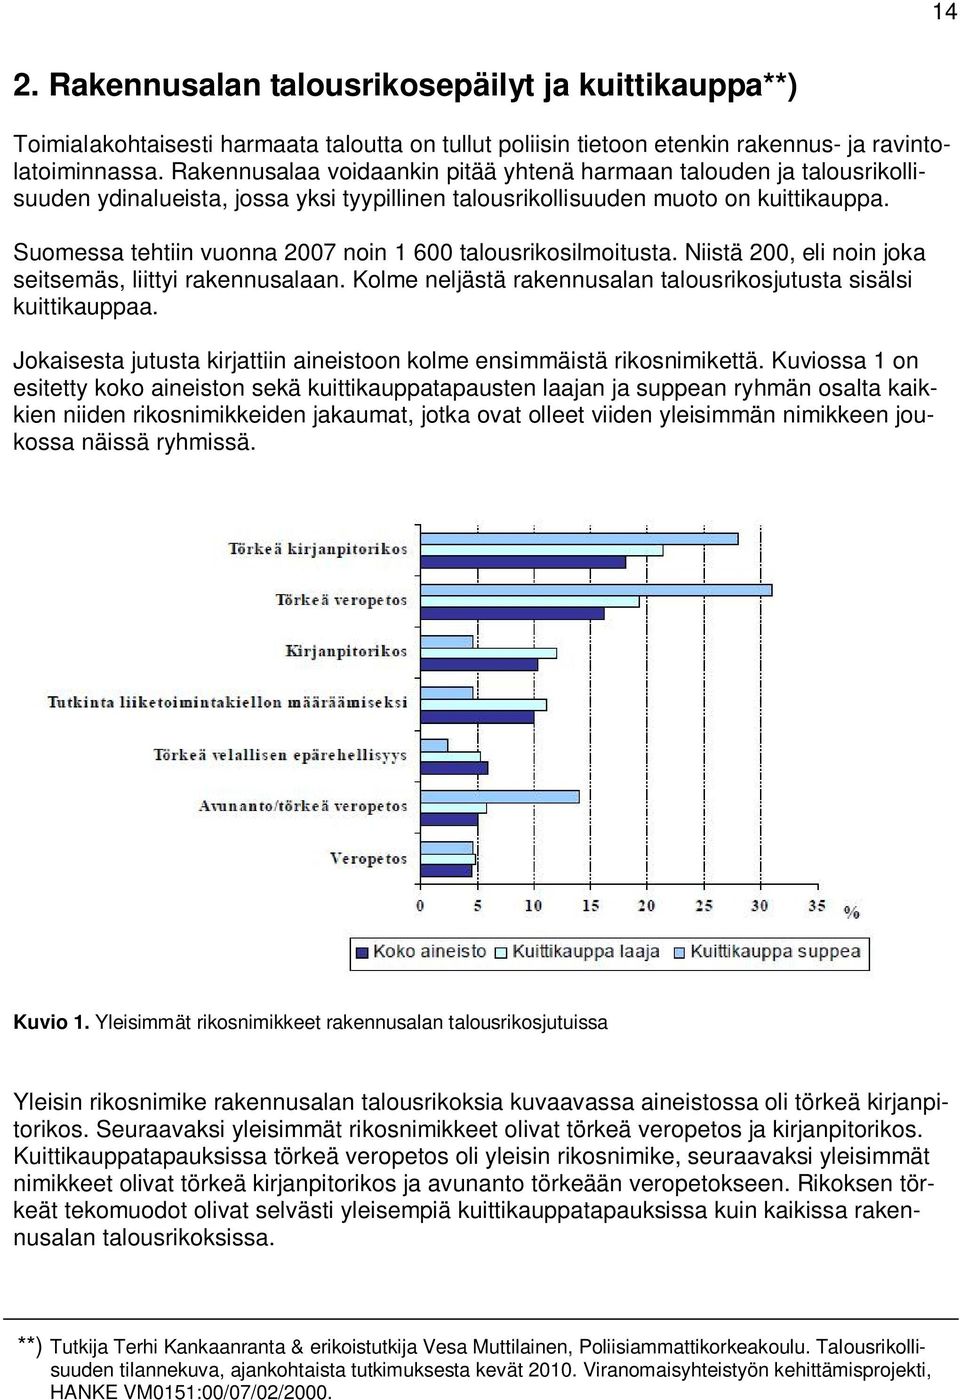 Suomessa tehtiin vuonna 2007 noin 1 600 talousrikosilmoitusta. Niistä 200, eli noin joka seitsemäs, liittyi rakennusalaan. Kolme neljästä rakennusalan talousrikosjutusta sisälsi kuittikauppaa.